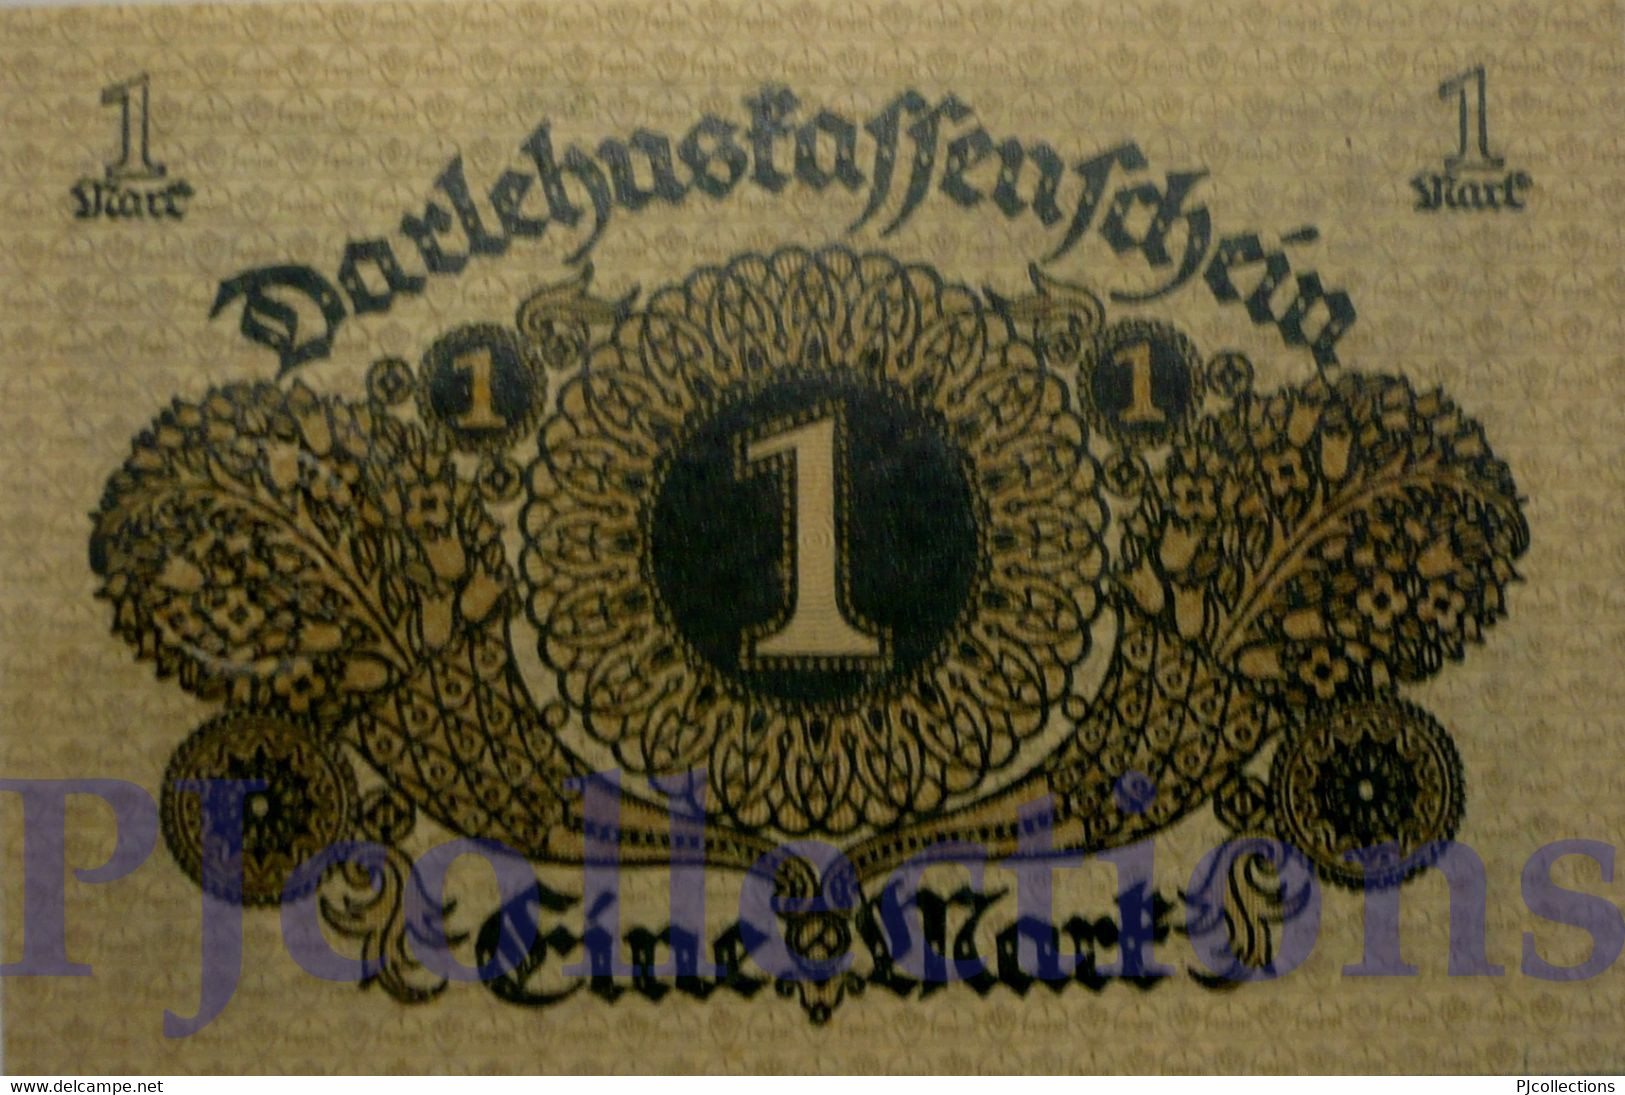 GERMANY 1 MARK 1920 PICK 58 AUNC - Administration De La Dette